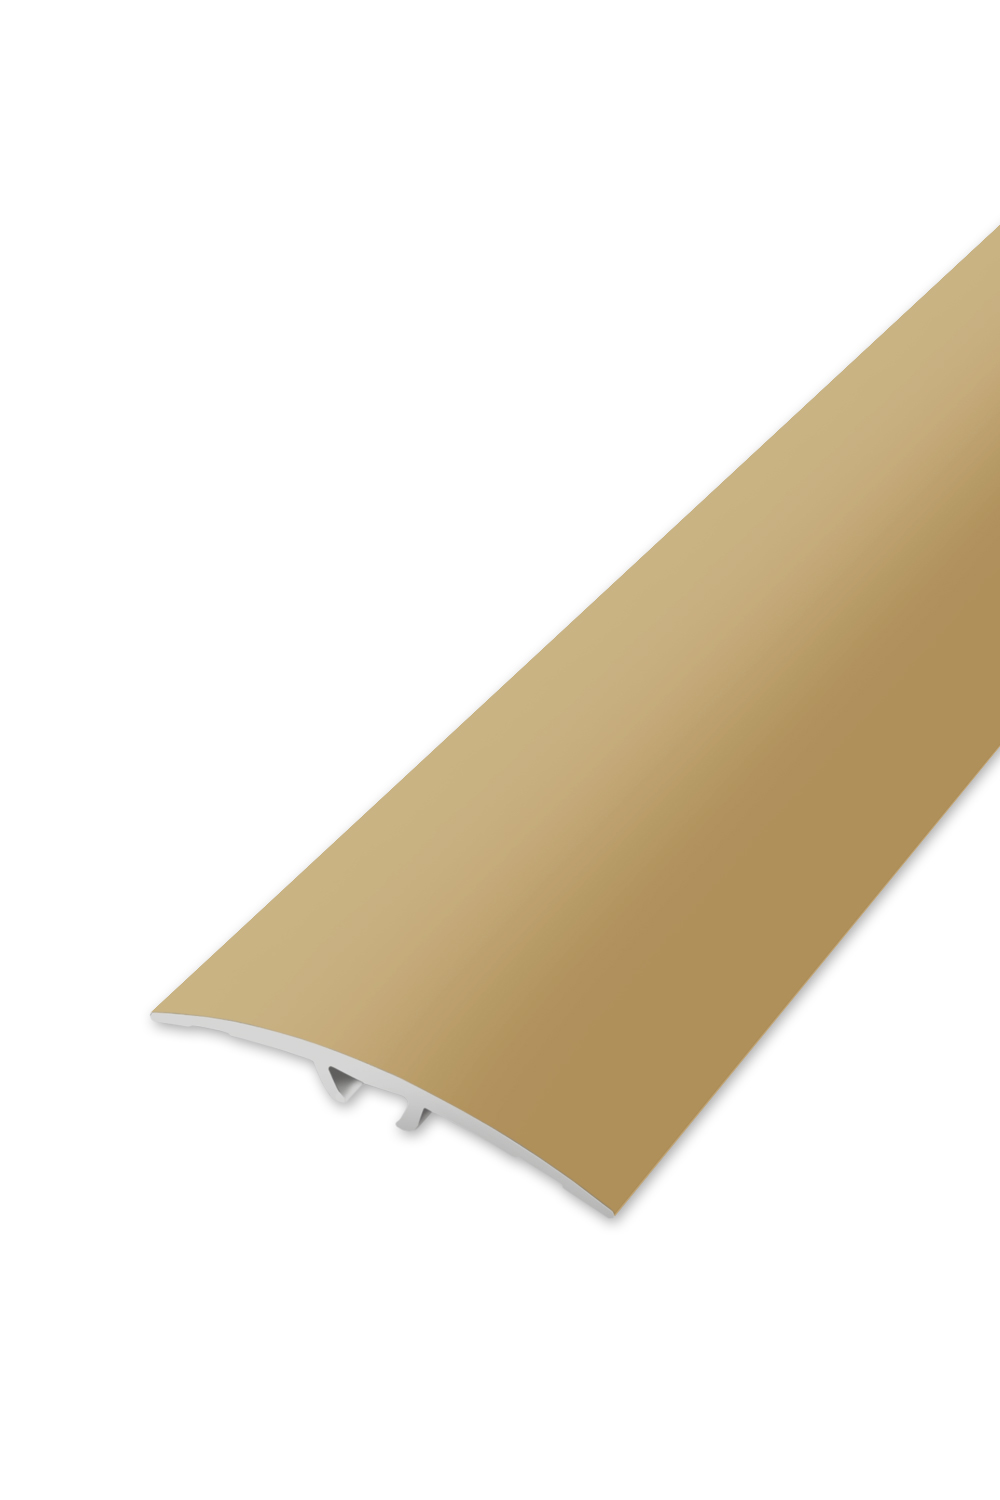 Přechodová lišta WELL 40 - Zlatá 270 cm